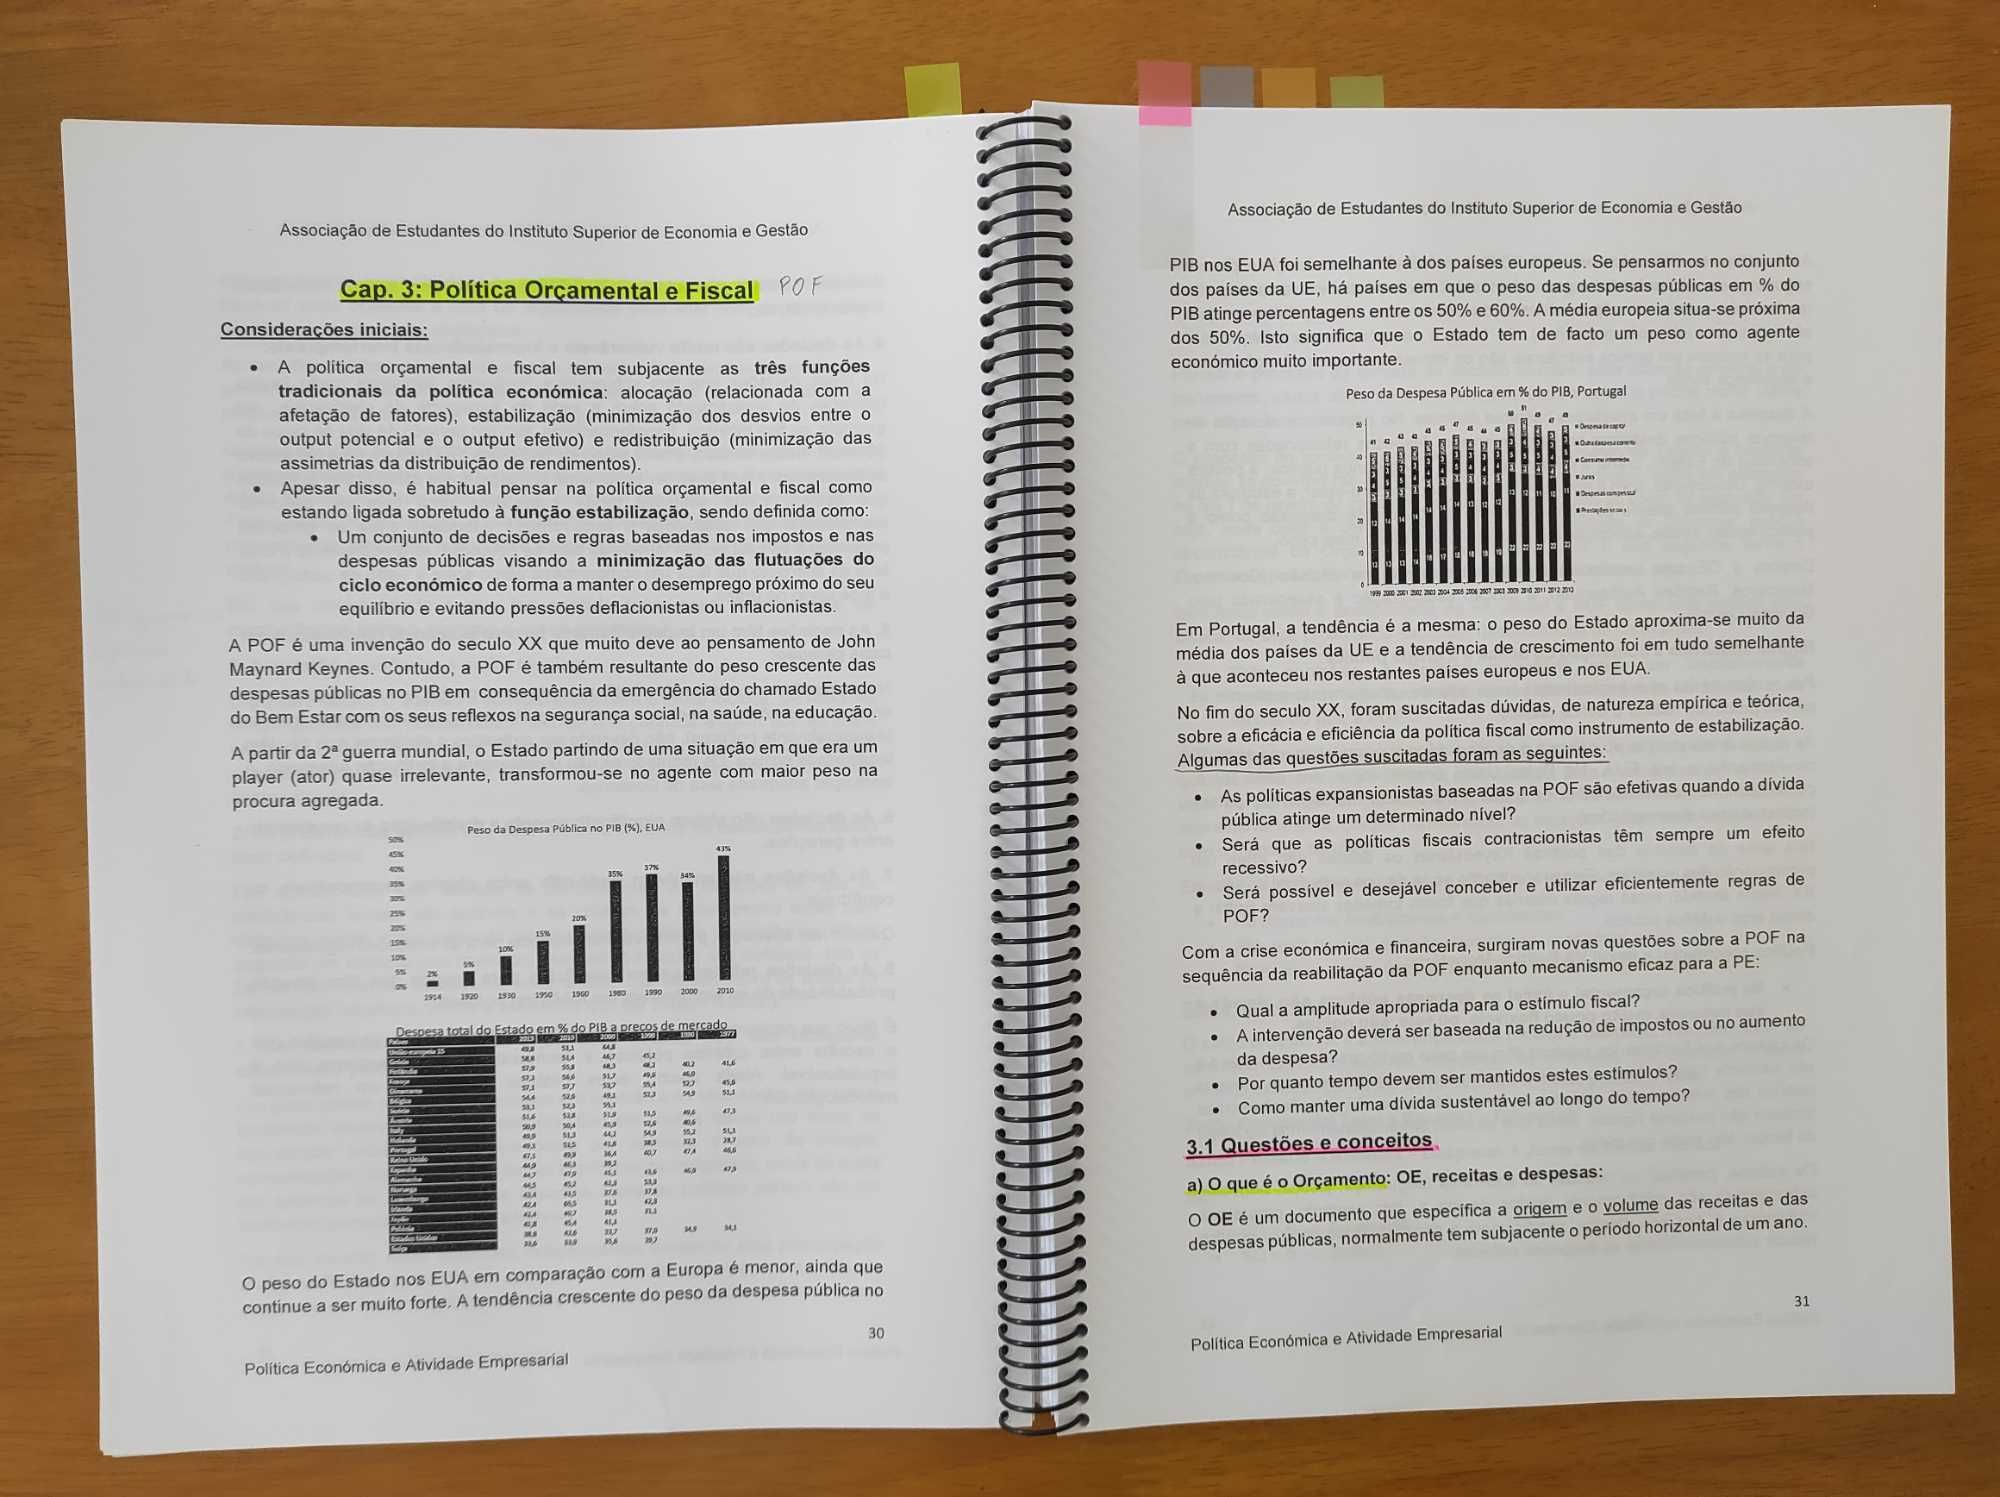 Guia Exame Estatística II e Política Económica e Atividade Empresarial